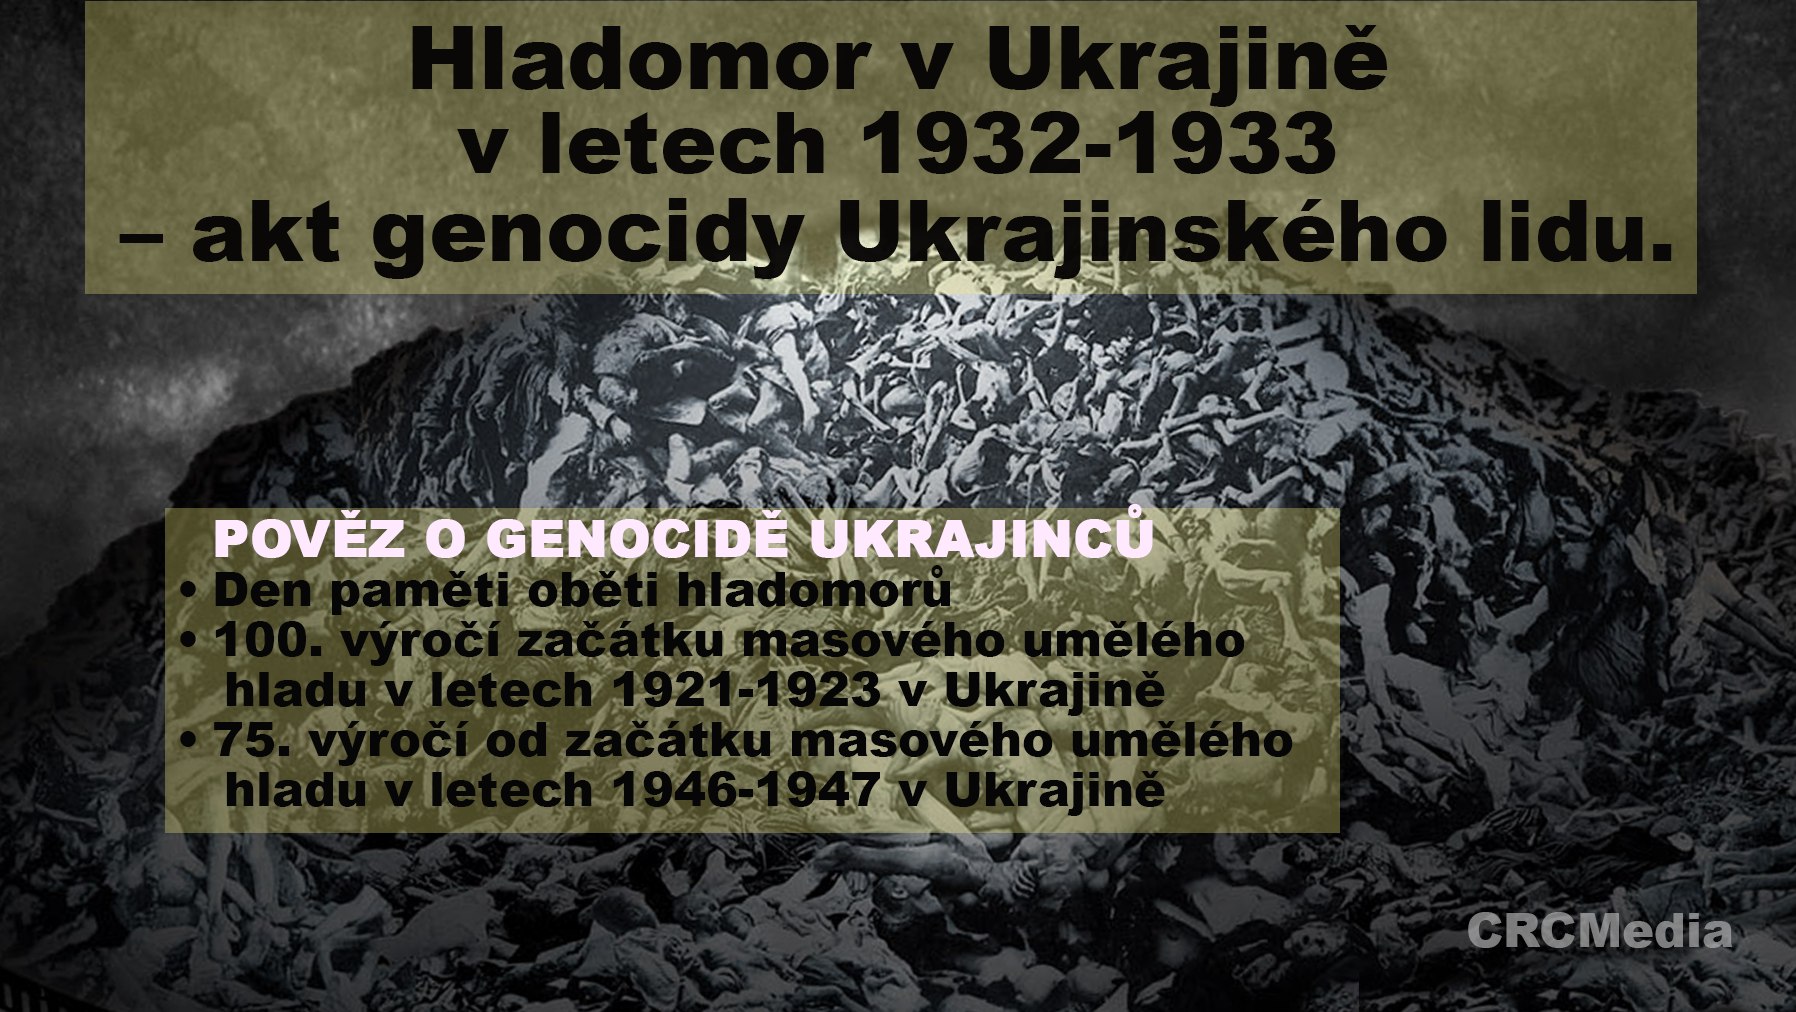 Zachovej paměť – sděl pravdu o #genocidě Ukrajinského národa